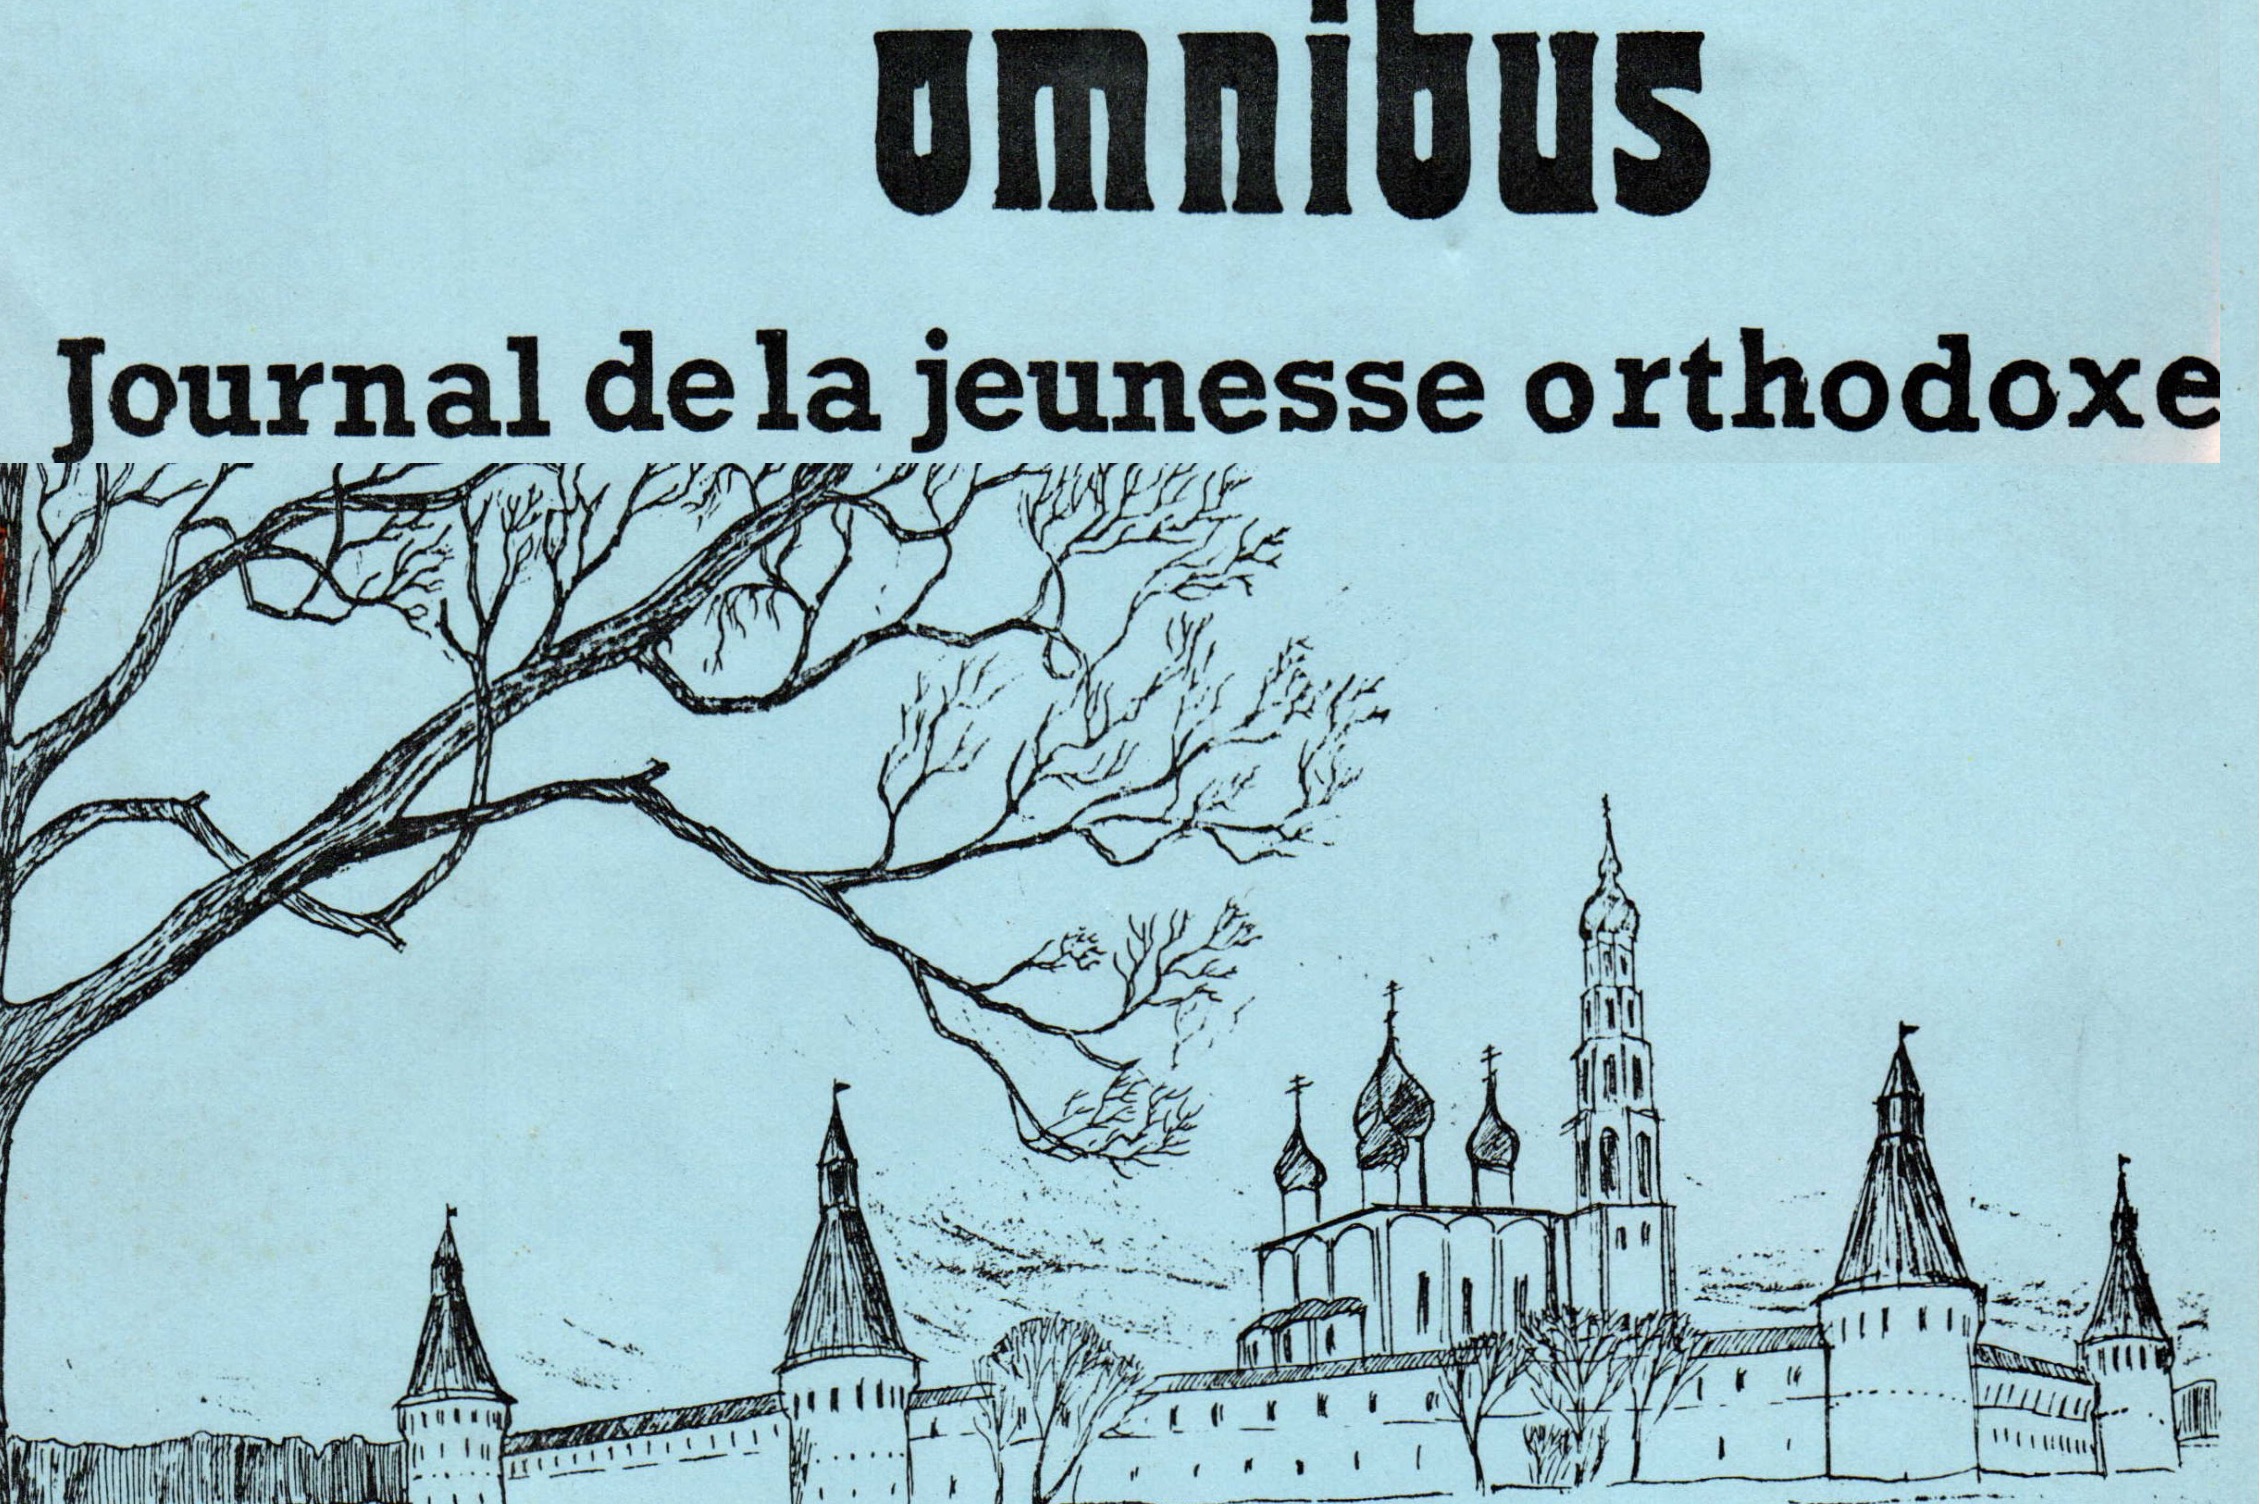 Rétrospective sur une aventure de la jeunesse orthodoxe : le journal omnibus